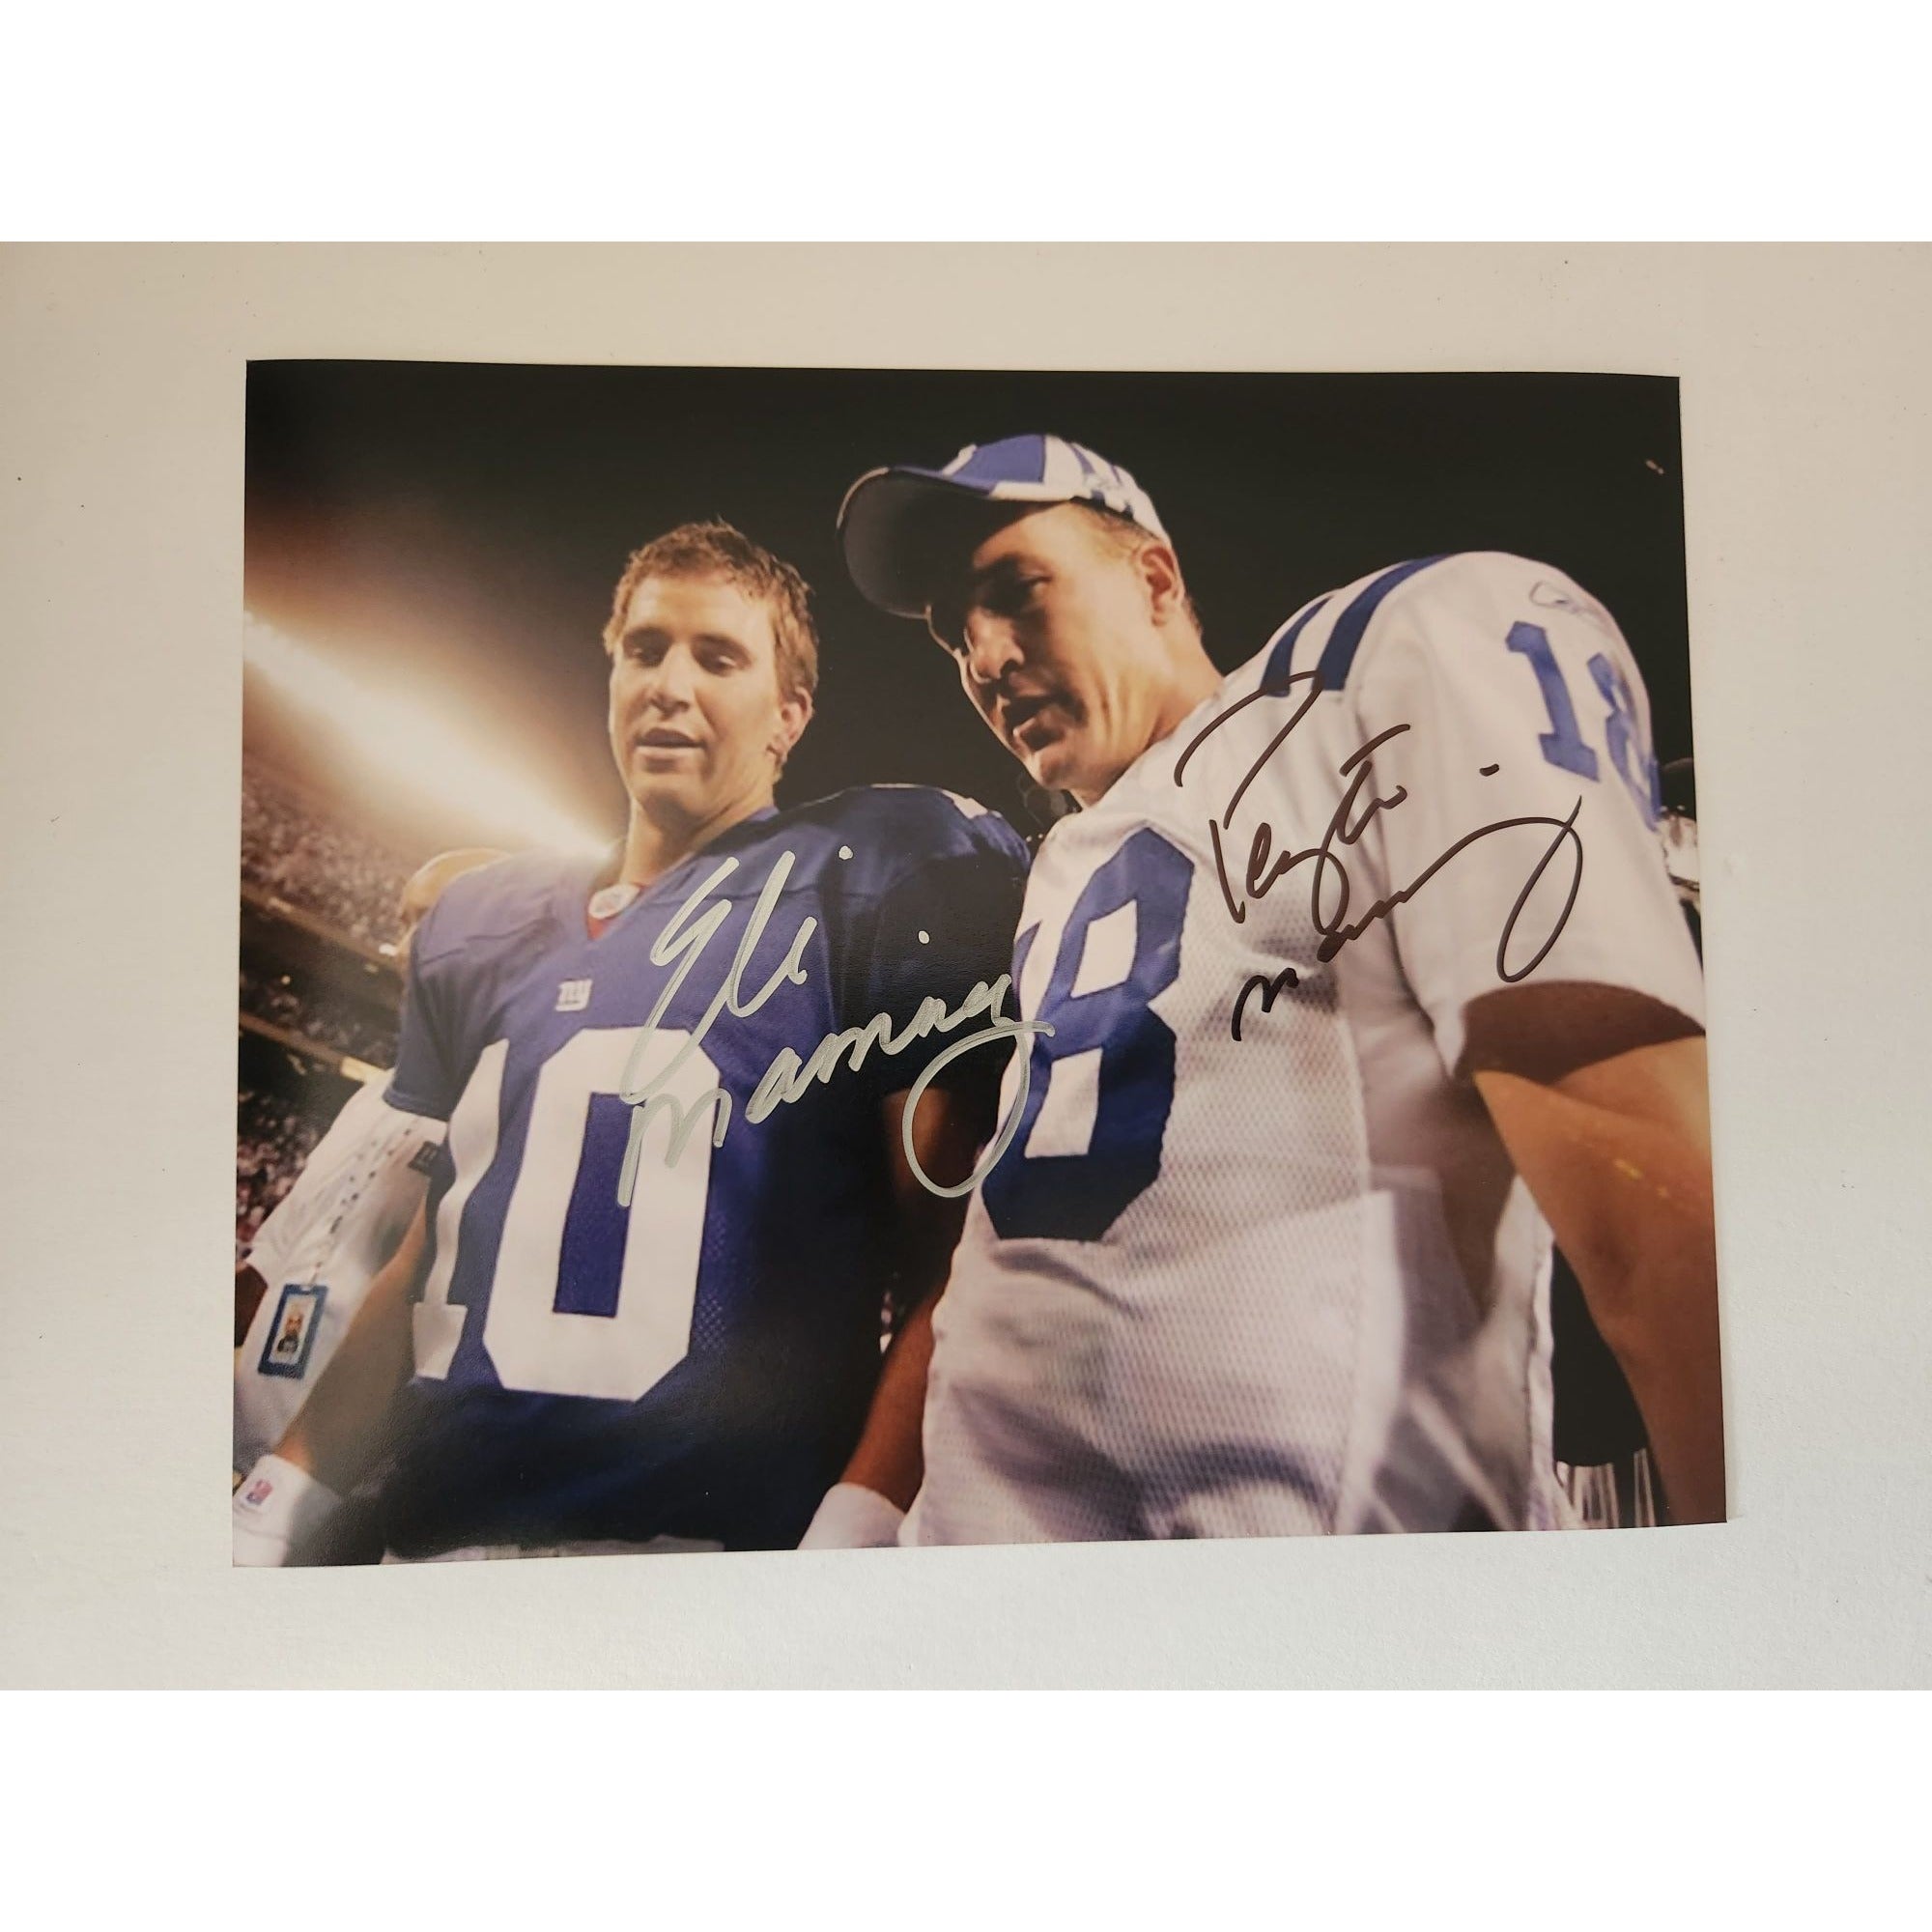 Eli and Peyton Manning 8x10 photo signed